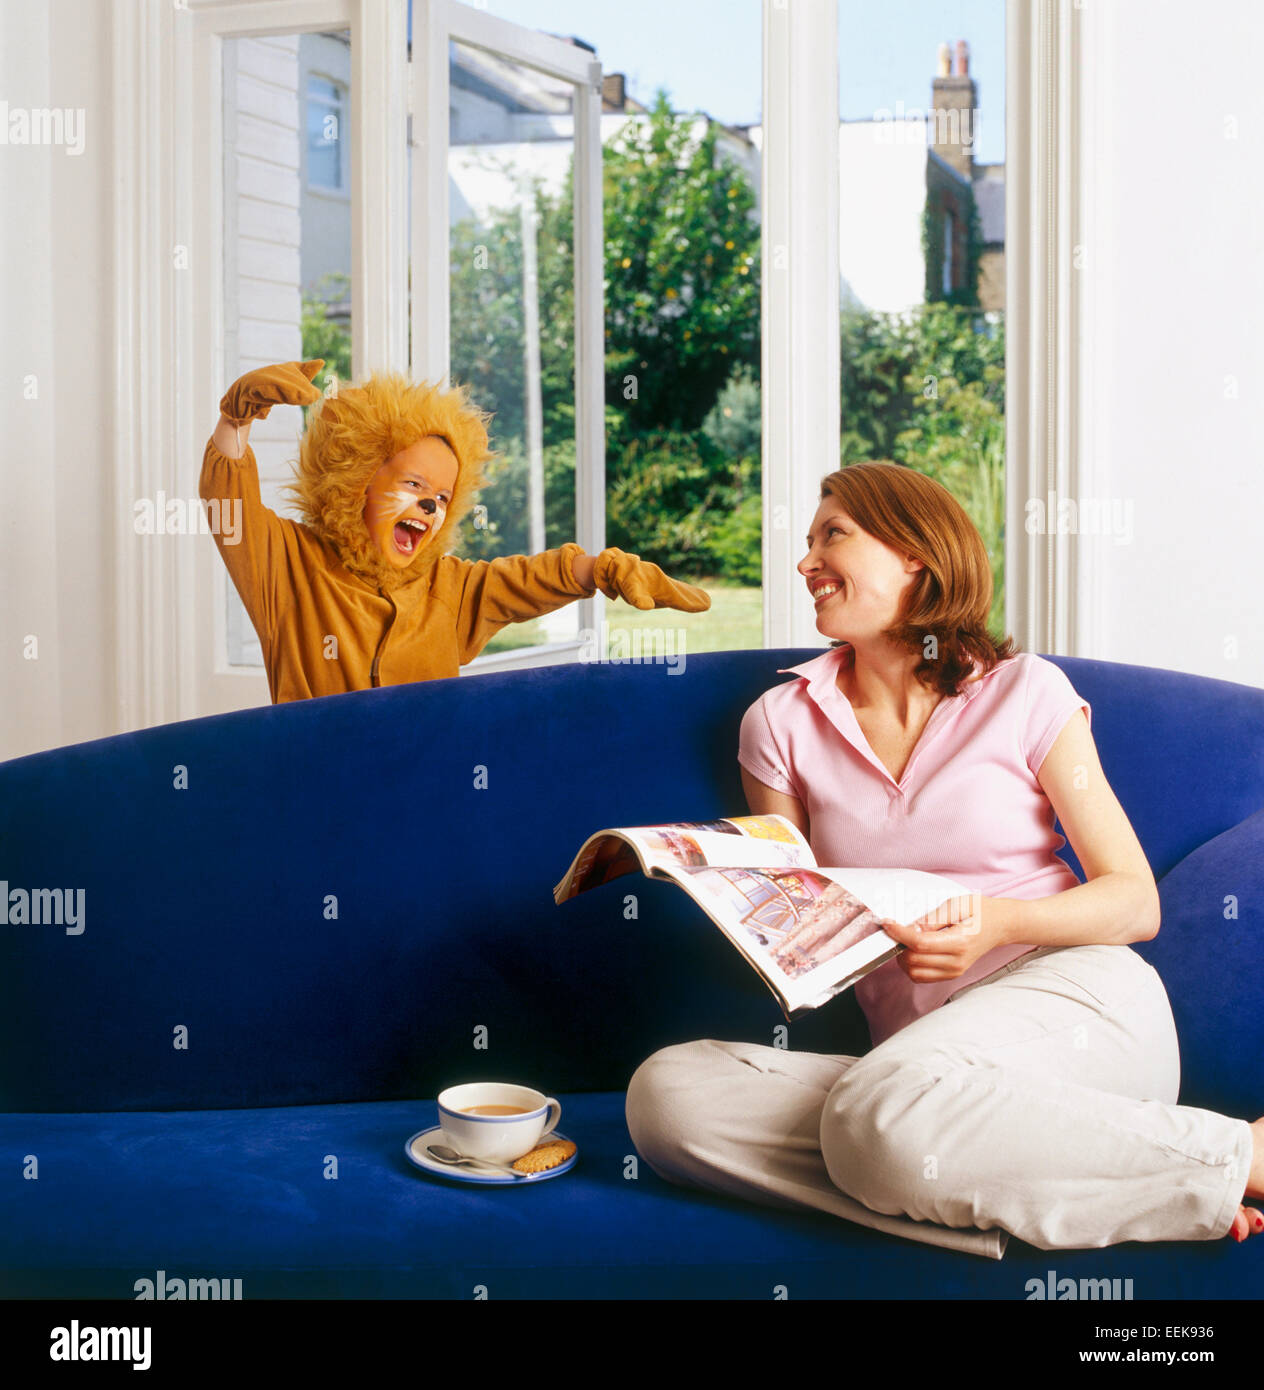 Mère à la maison assis se reposer, lire un journal, son enfant habillé en surprises lion par derrière le canapé, rugissant scarily Banque D'Images